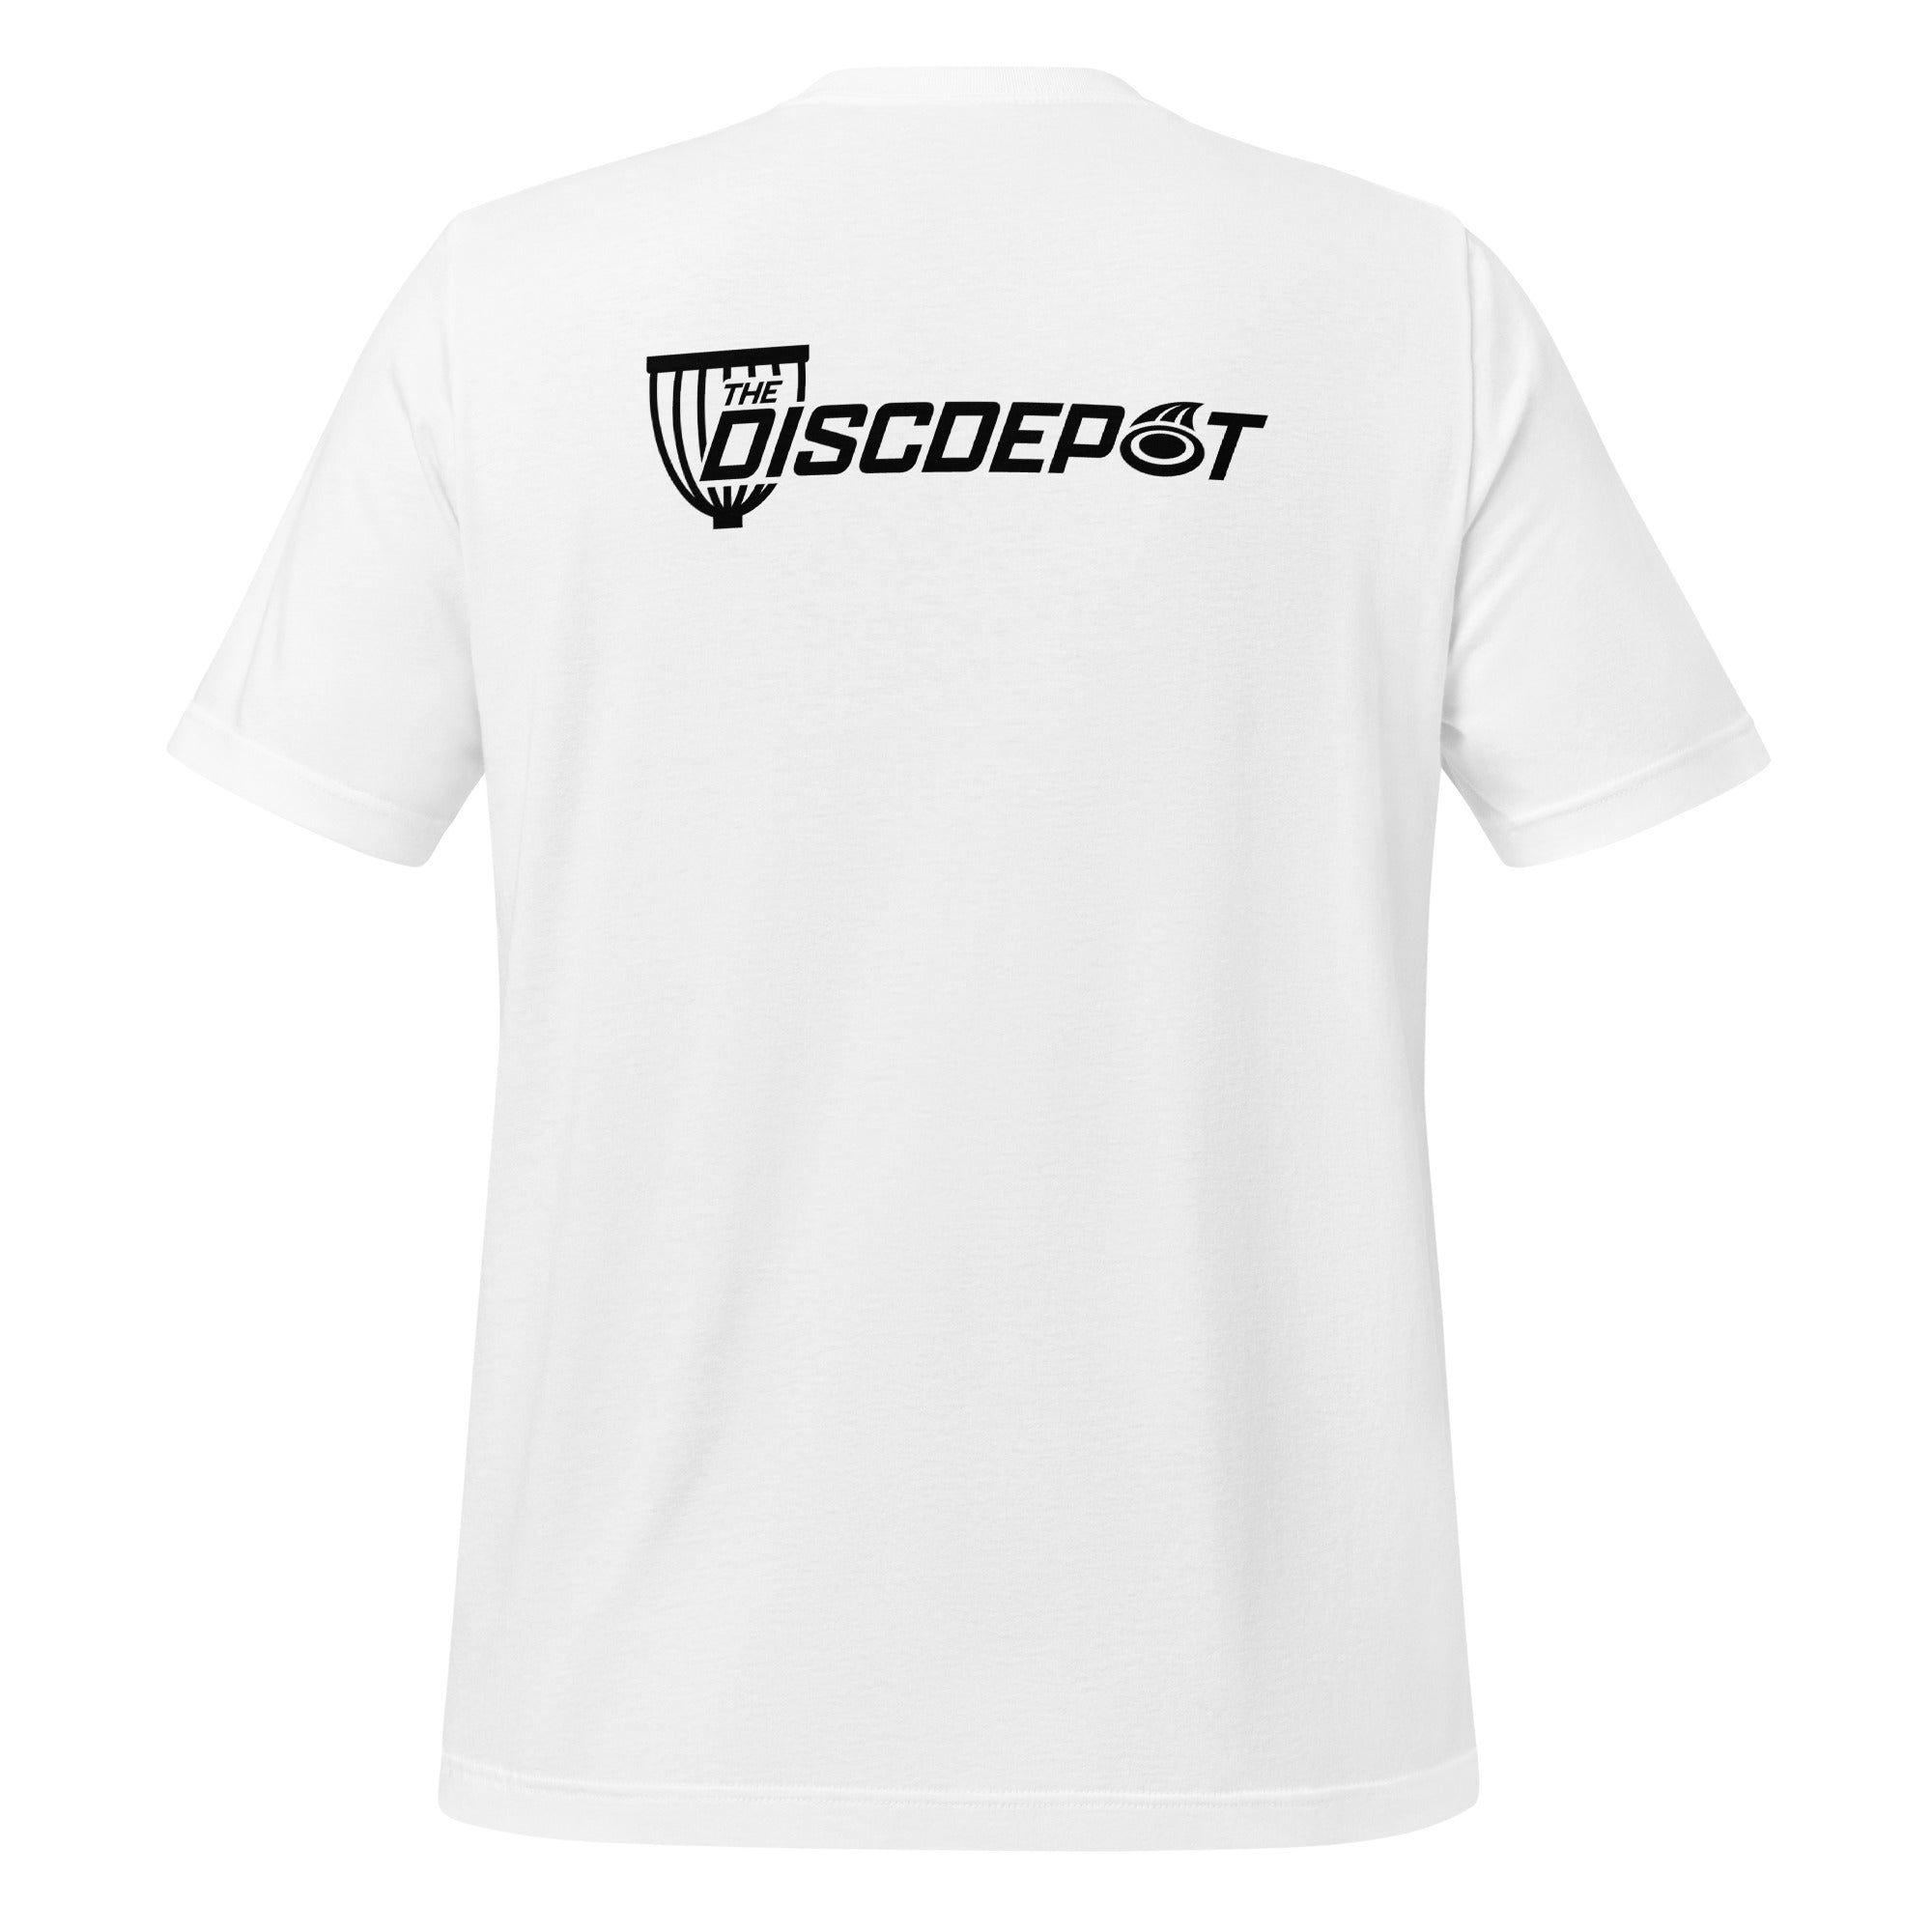 The Disc Depot Short Sleeve Unisex t-shirt-30